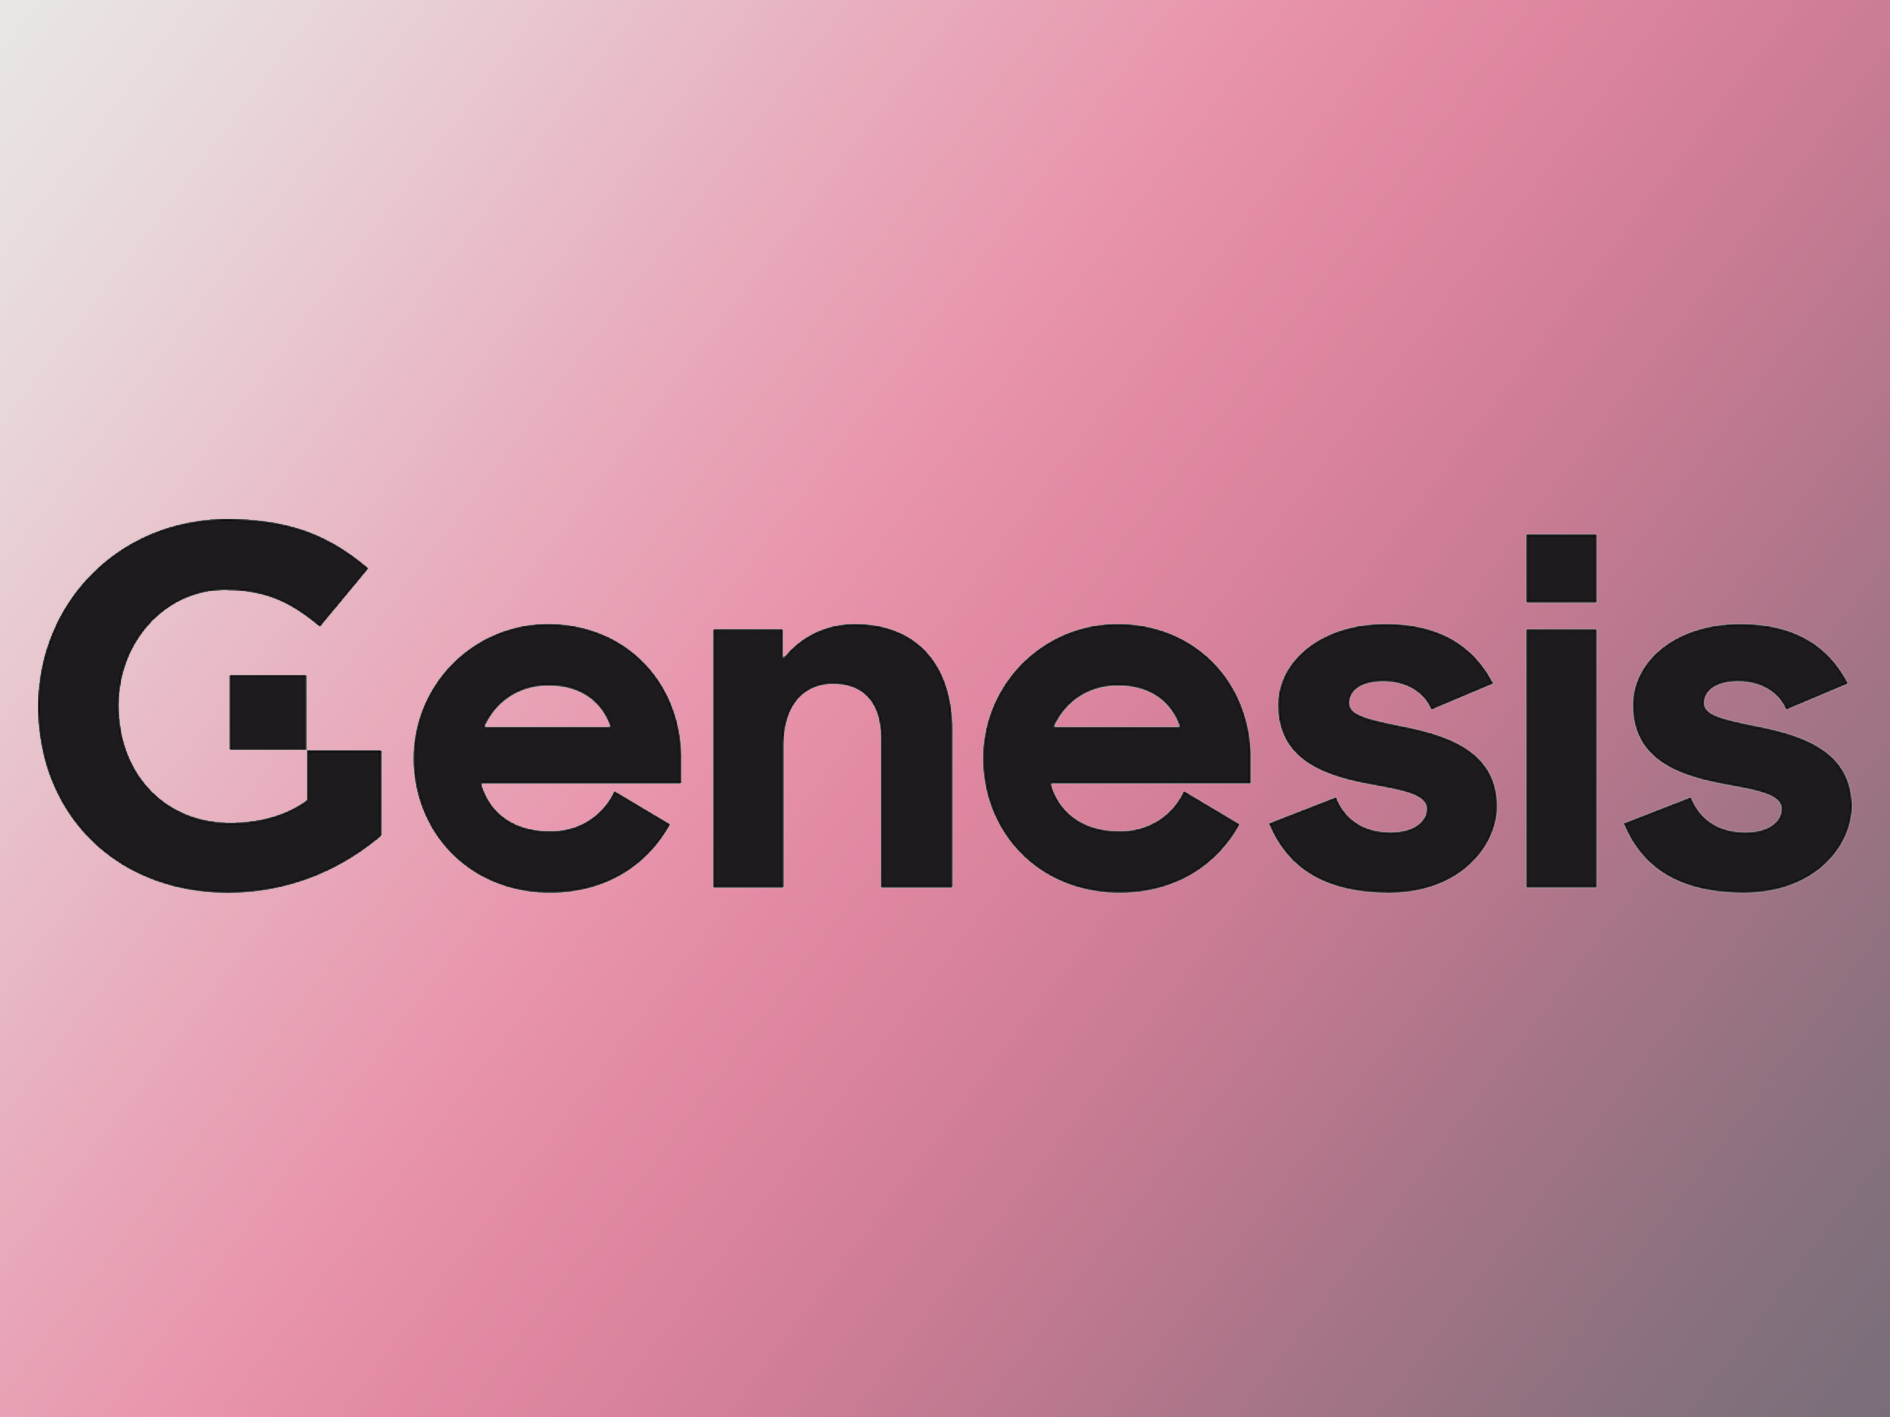 Công ty cho vay tiền điện tử Genesis của DCG có thể nộp đơn xin phá sản, theo báo cáo của Bloomberg